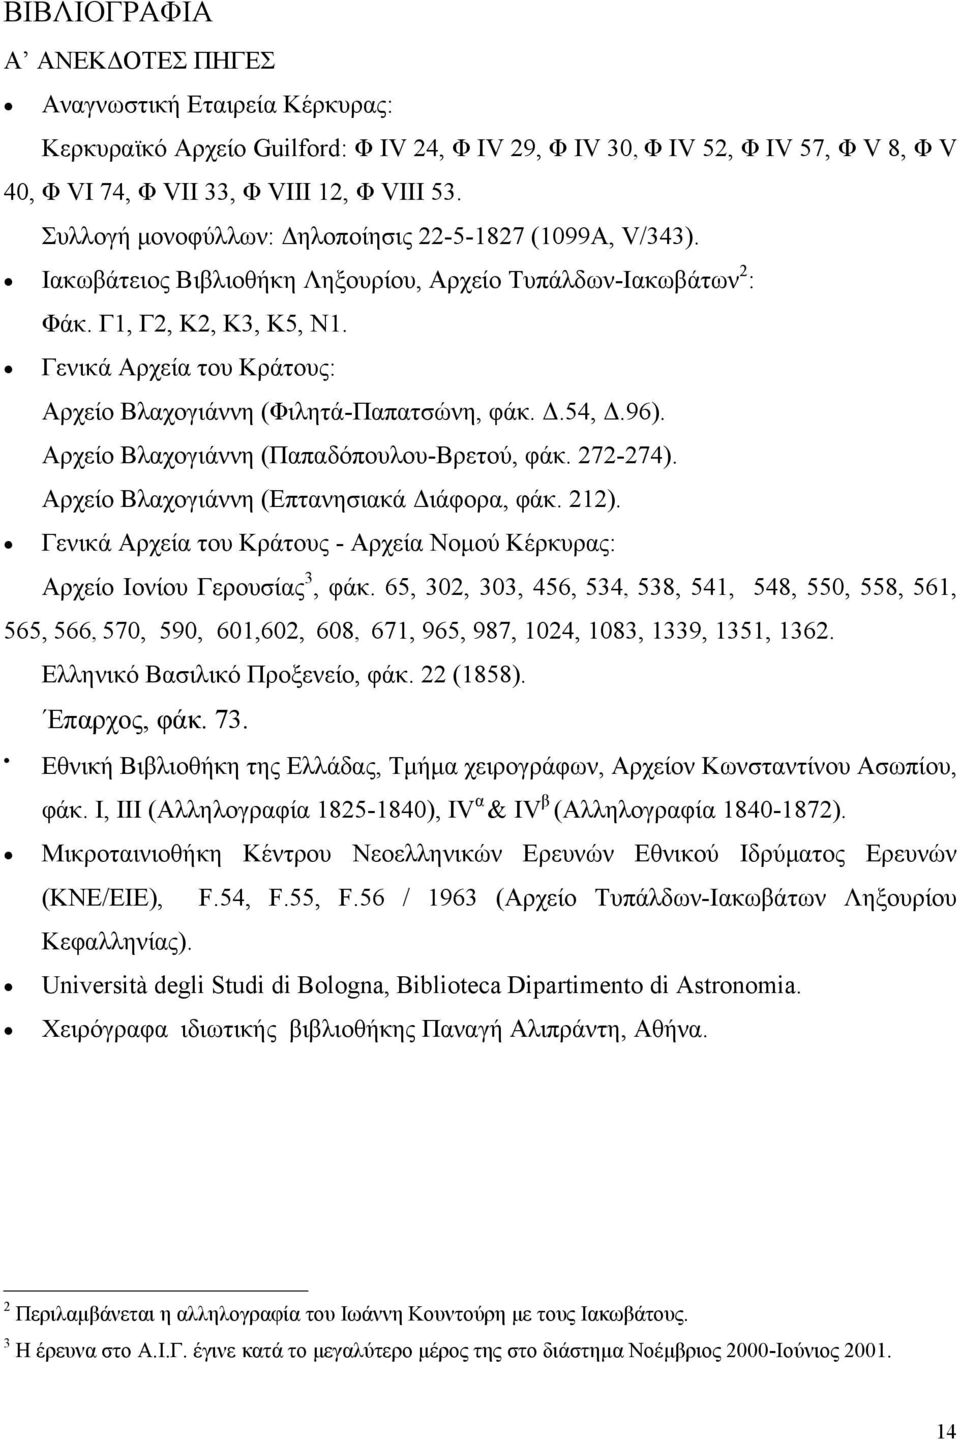 Γενικά Αρχεία του Κράτους: Αρχείο Βλαχογιάννη (Φιλητά-Παπατσώνη, φάκ..54,.96). Αρχείο Βλαχογιάννη (Παπαδόπουλου-Βρετού, φάκ. 272-274). Αρχείο Βλαχογιάννη (Επτανησιακά ιάφορα, φάκ. 212).